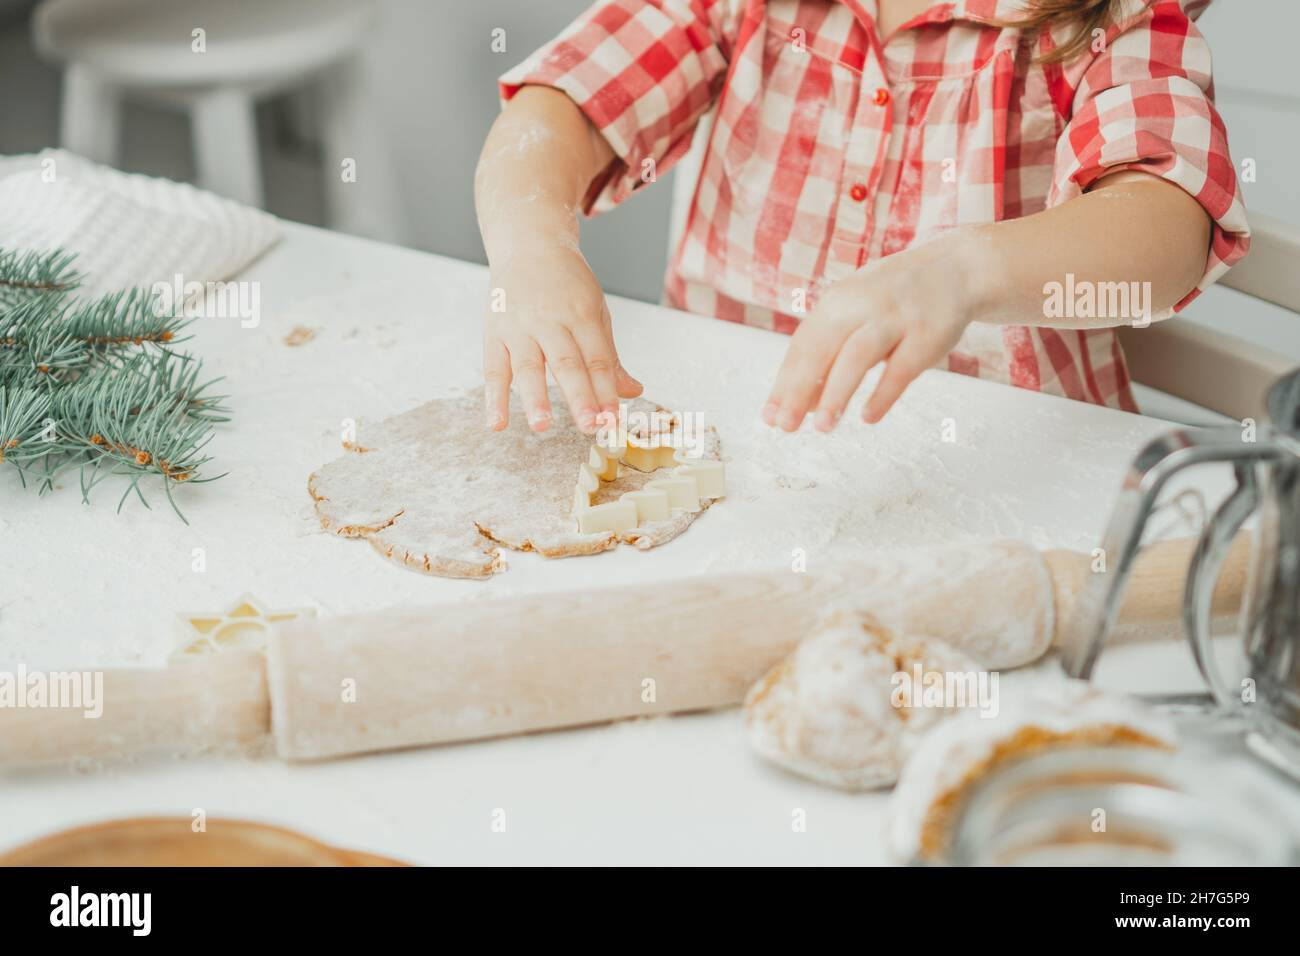 Teilweise verschwommene Hände eines kleinen Mädchens schneiden in der weißen Küche Weihnachtsbaum-Lebkuchenkekse aus gerolltem Teig aus. Das Kind bereitet Kekse auf Weiß zu Stockfoto